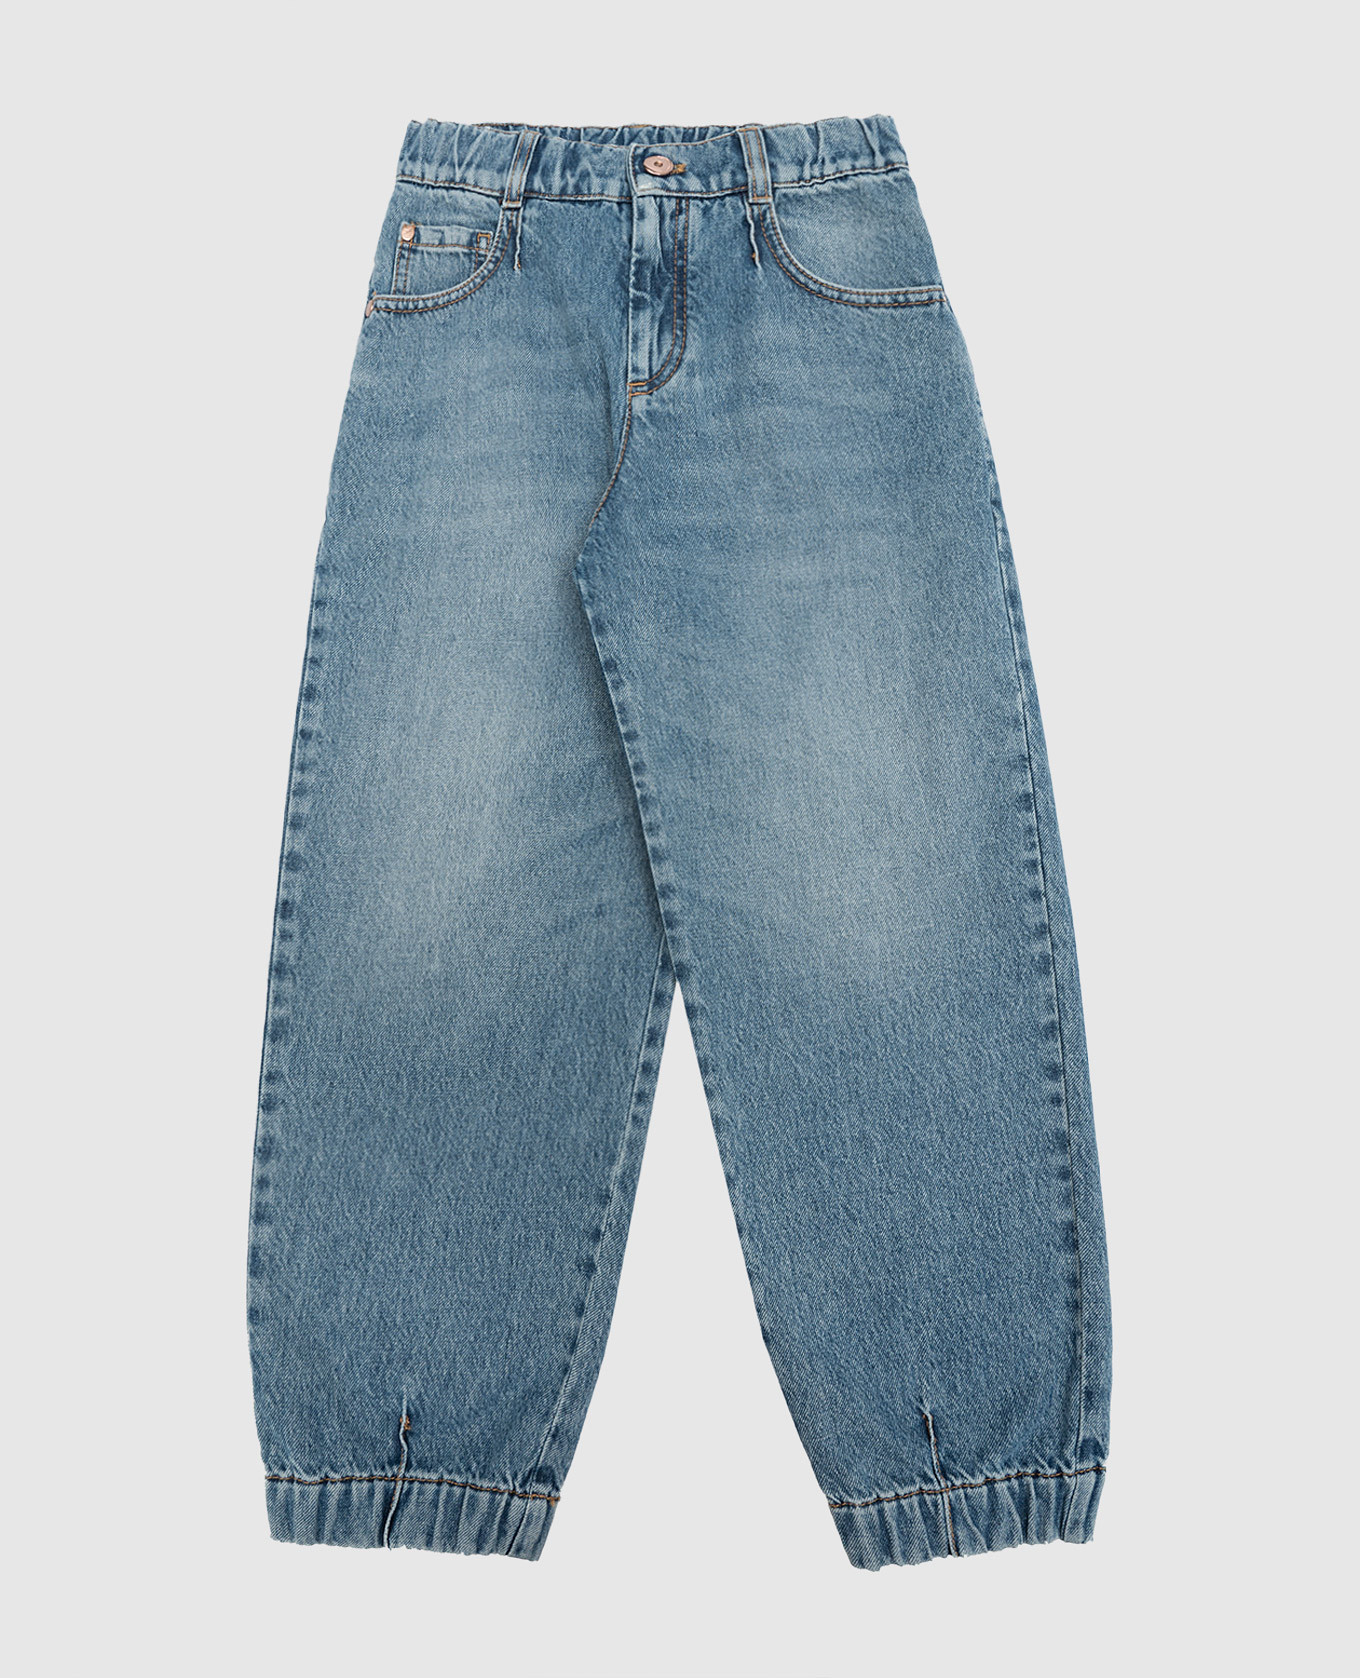 Brunello Cucinelli - Детские серые джинсы-бананы BH188P453B купить в Symbol